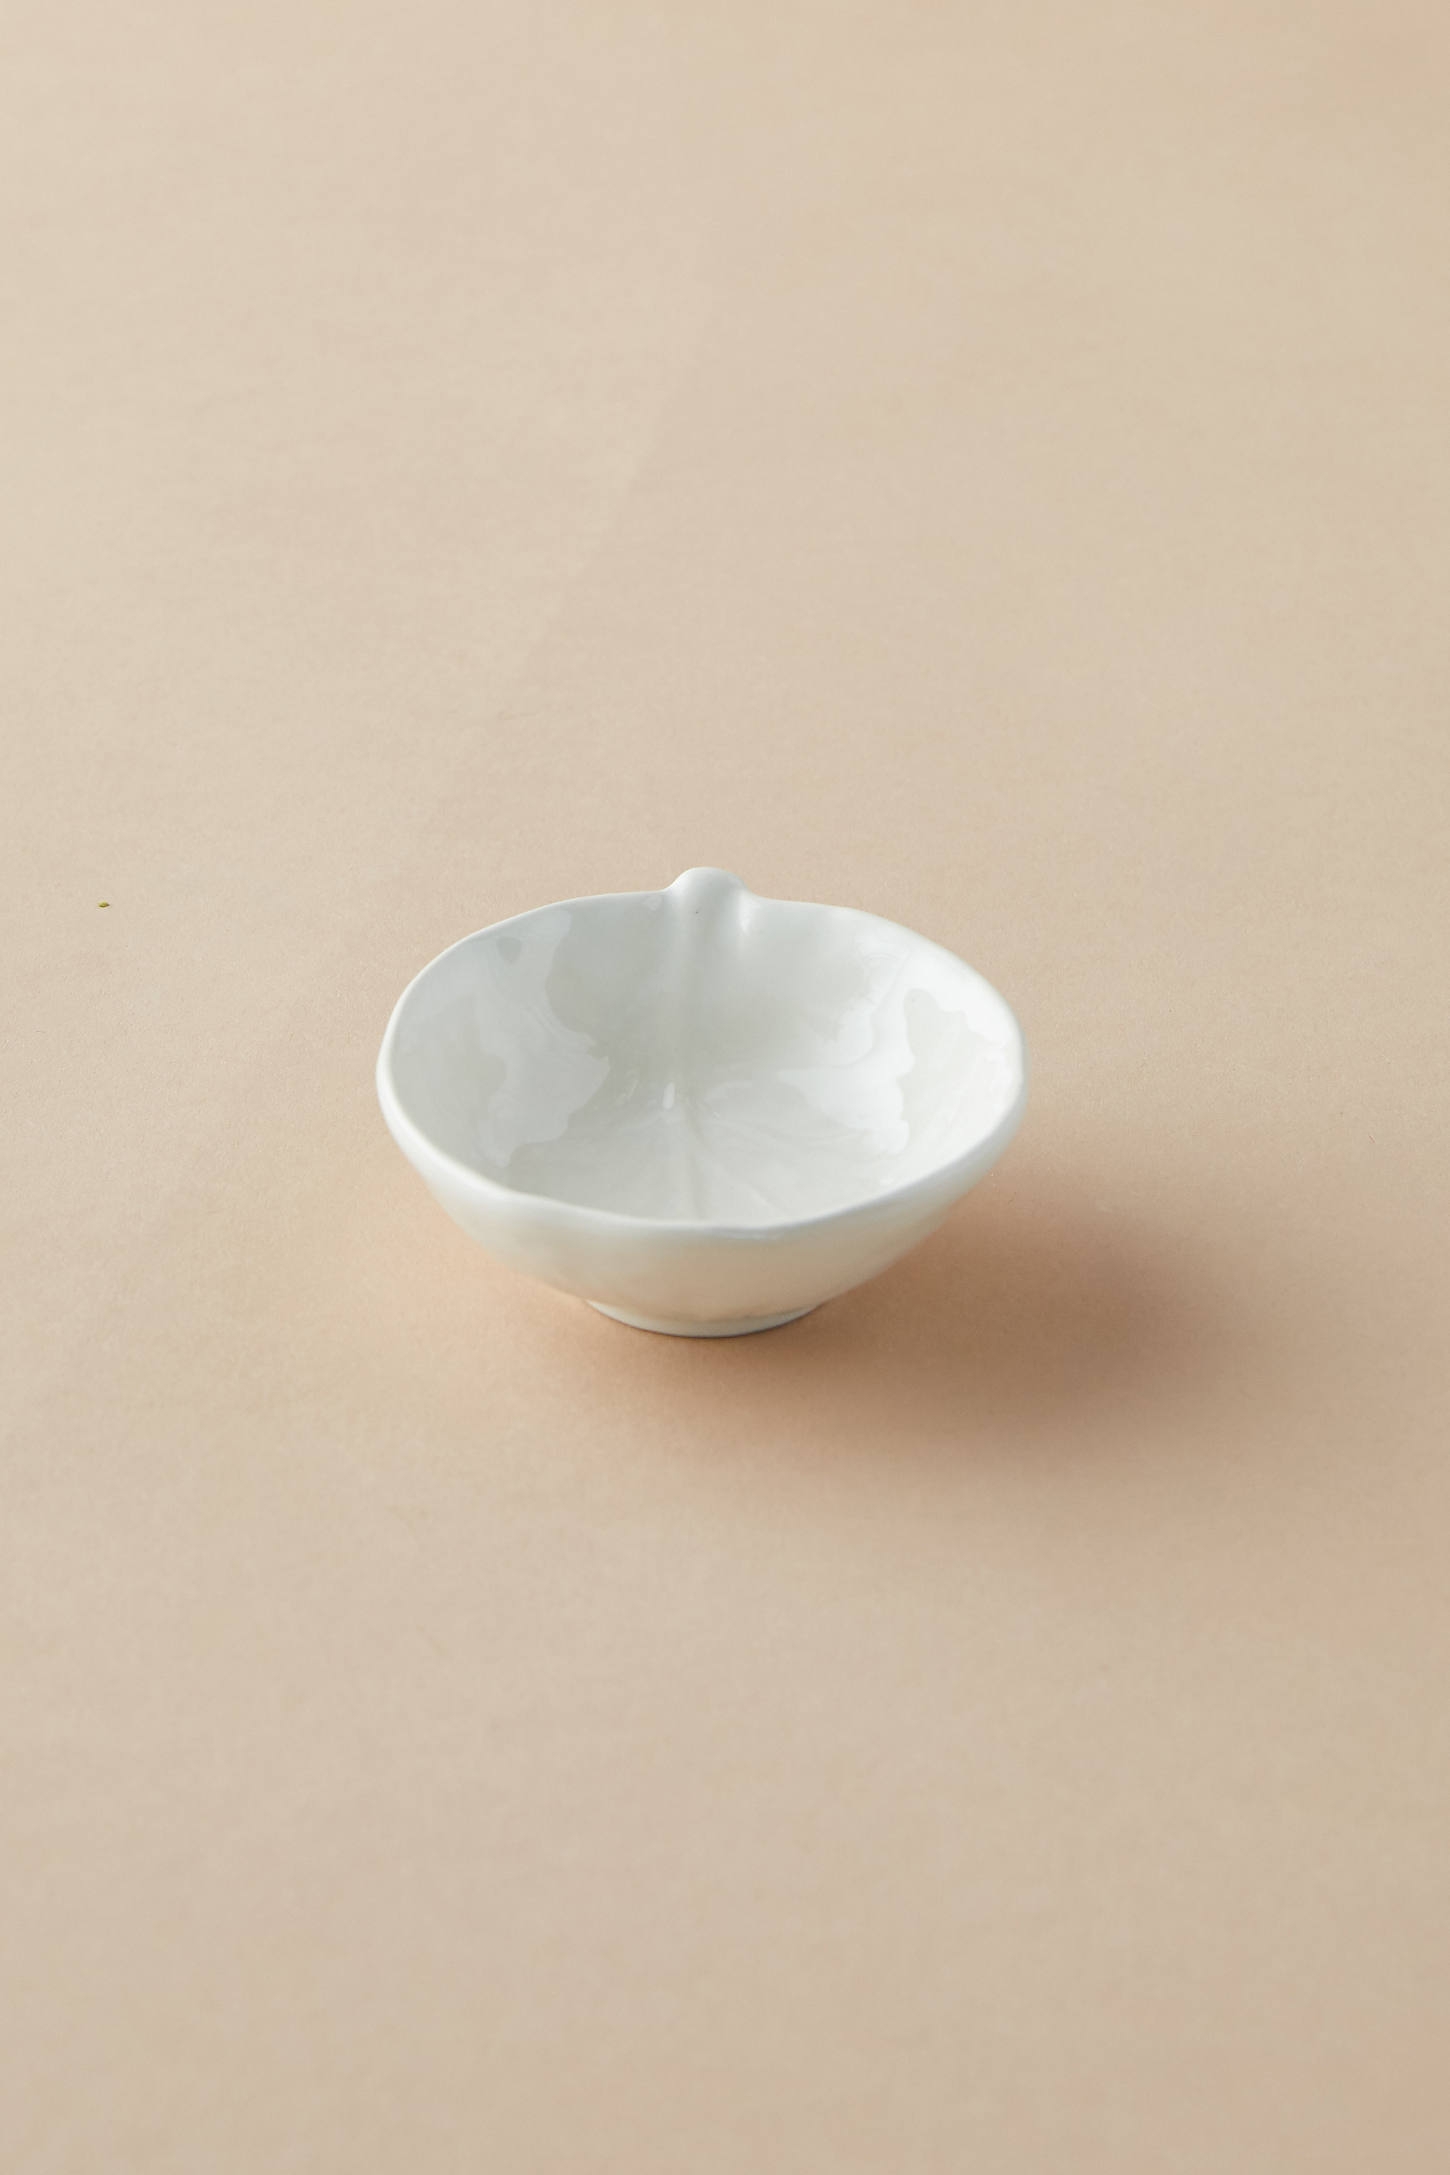 Ceramic Cabbage Salt Cellar - Image 0